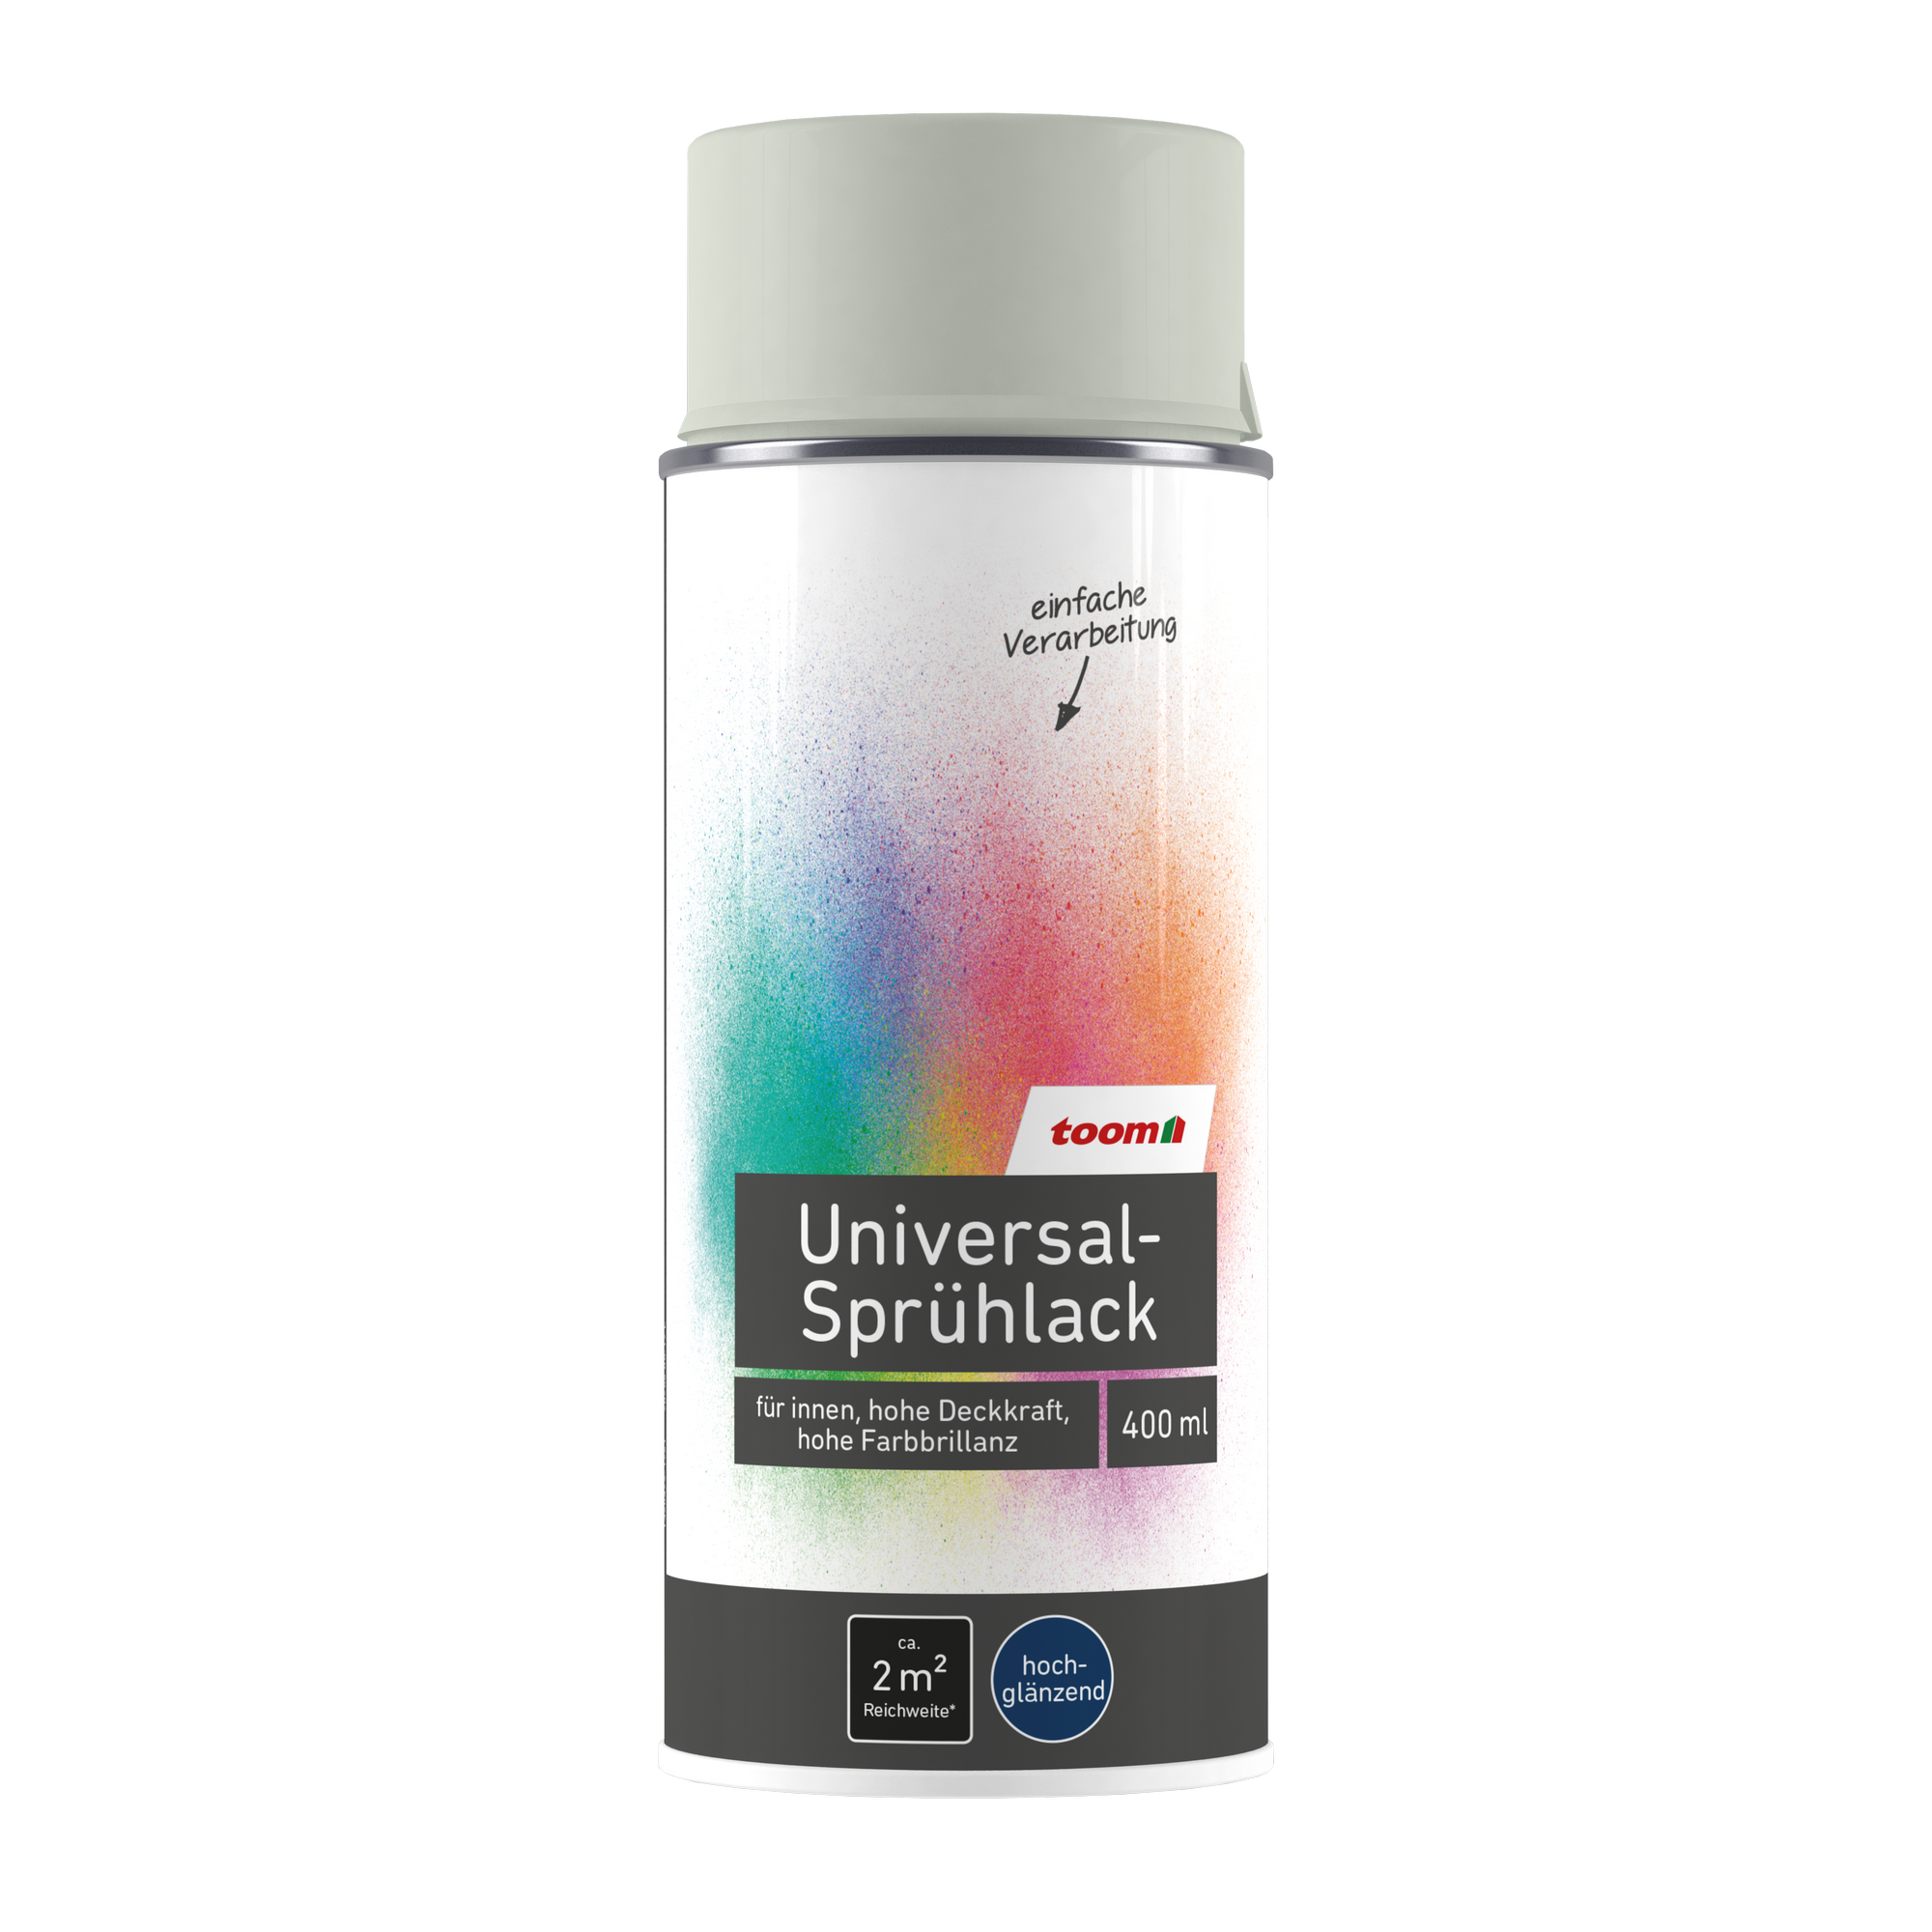 Universal-Sprühlack 'Mondschein' lichtgrau glänzend 400 ml + product picture